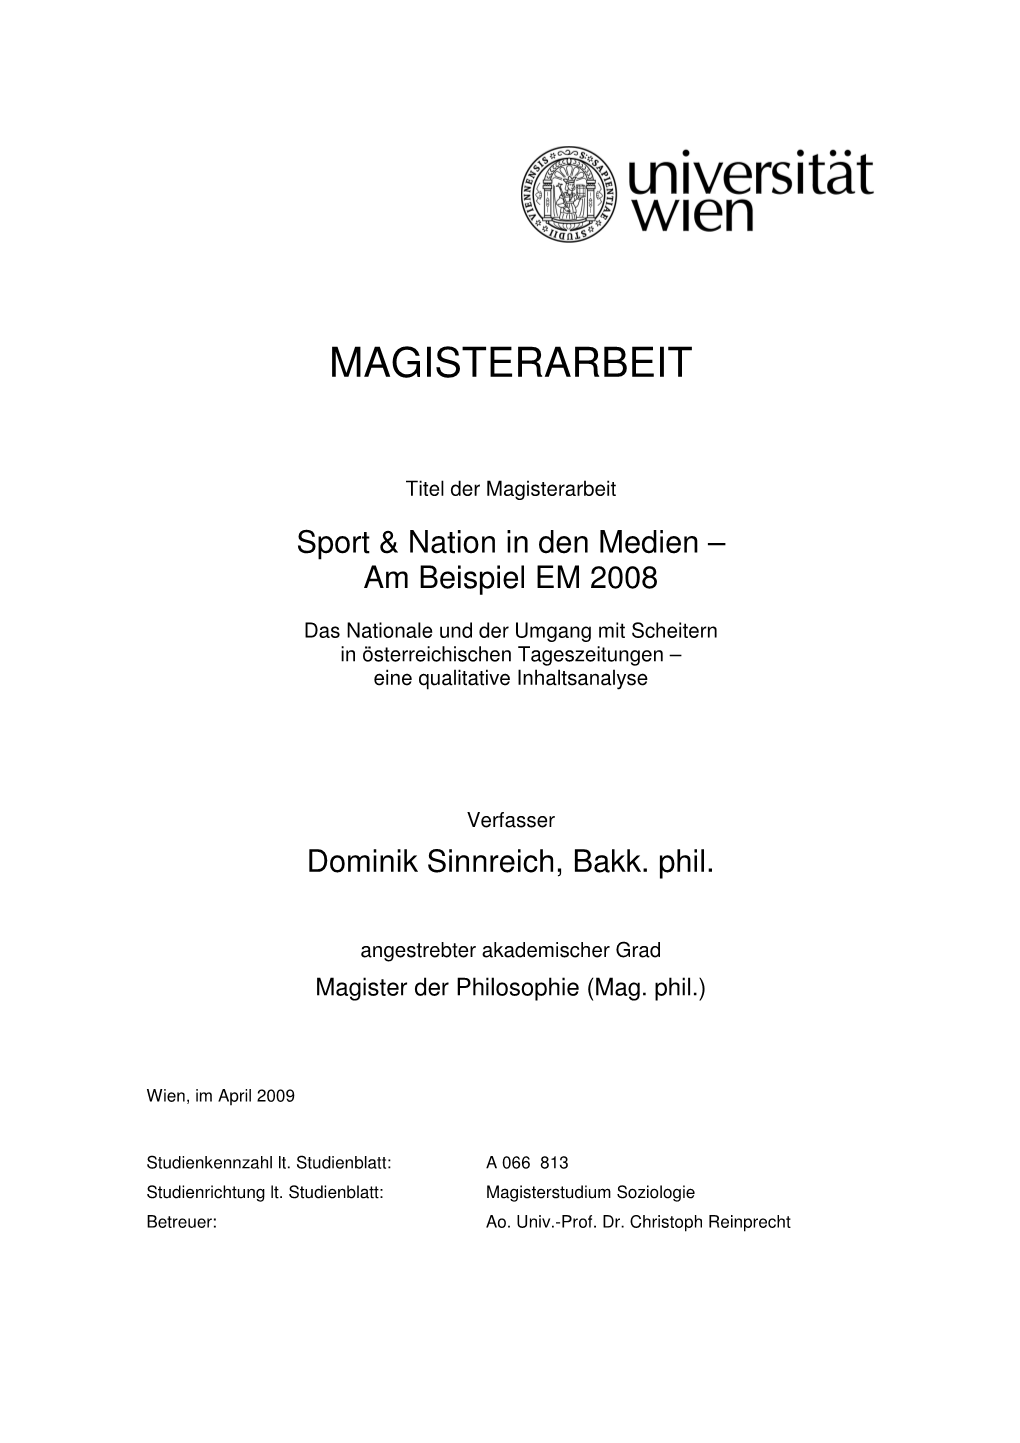 Magisterarbeit Dominik Sinnreich 0205190